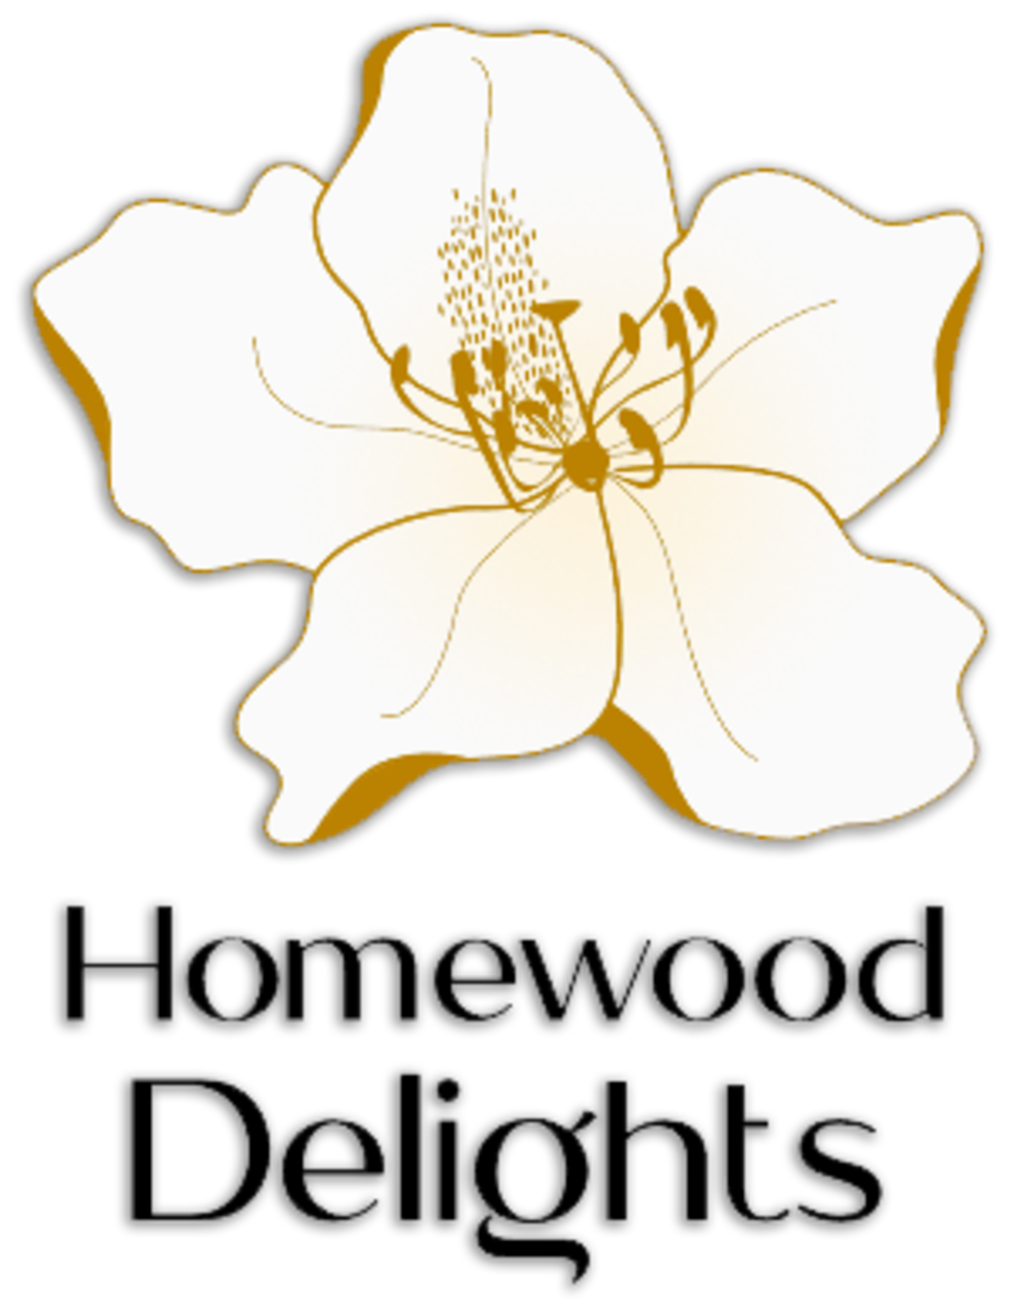 Homewood Delights